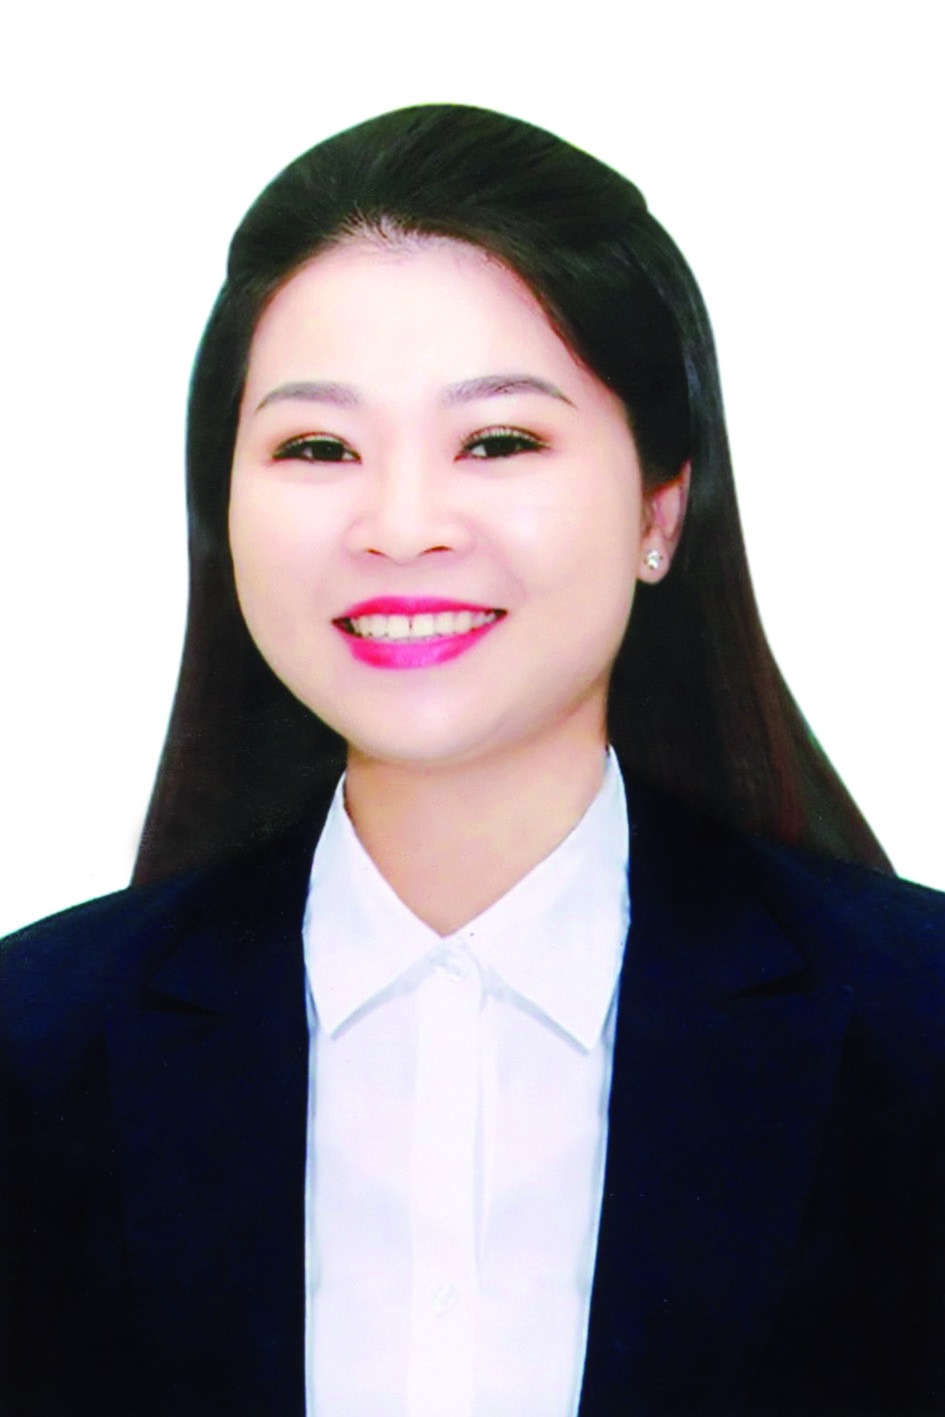 Chương trình hành động của Bí thư Thành đoàn Hà Nội Chu Hồng Minh, ứng cử viên đại biểu HĐND TP Hà Nội nhiệm kỳ 2021 - 2026 - Ảnh 1